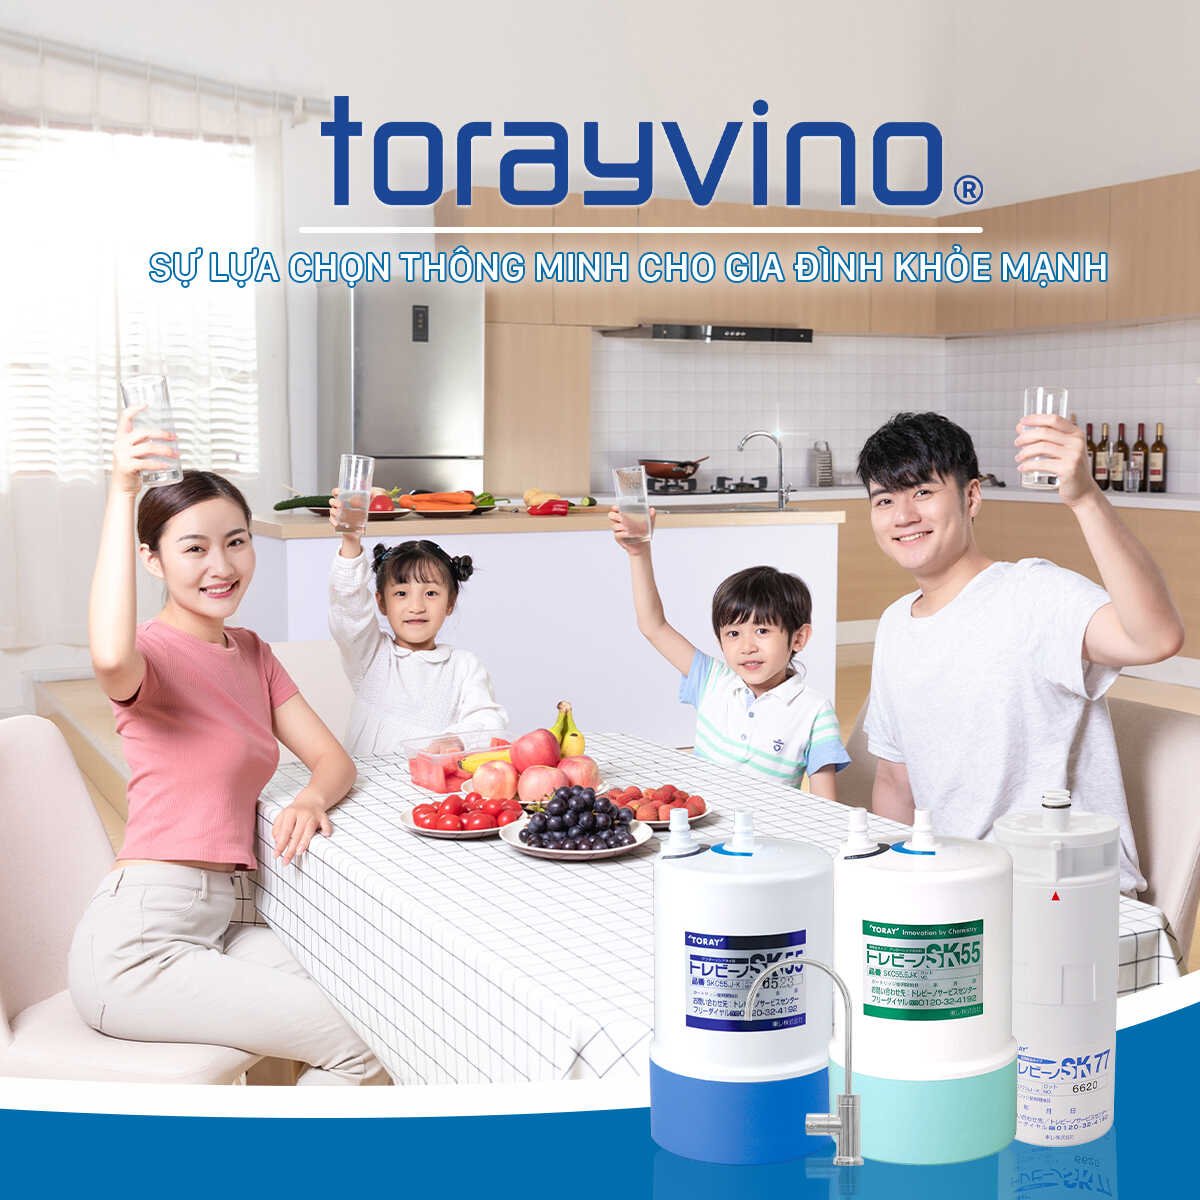 Máy lọc nước để gầm tủ bếp Torayvino giúp bảo vệ sức khỏe và nâng cao chất lượng cuộc sống của gia đình